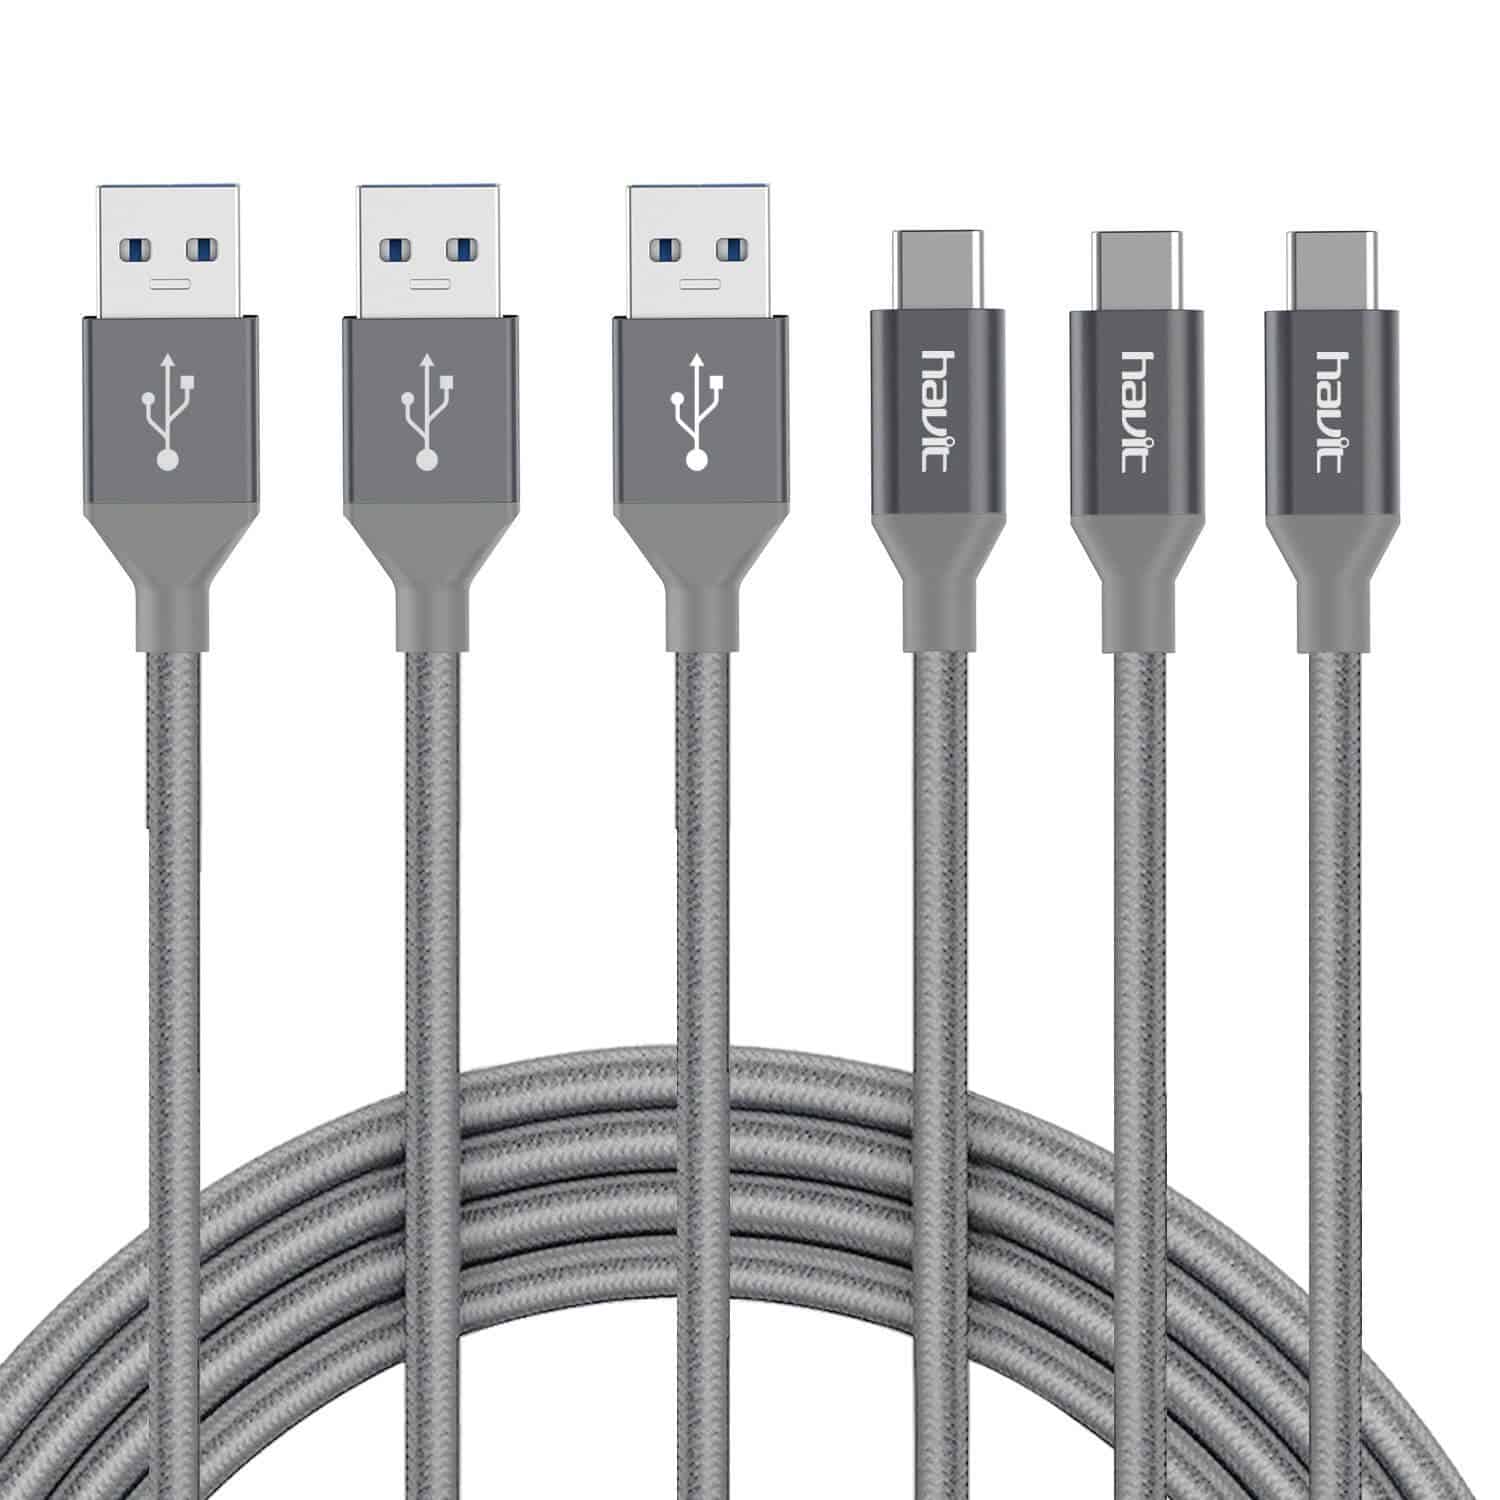 HAVIT HV-CB723X USB C to USB A Cable, 3.3ft/1m, Nylon, Braided